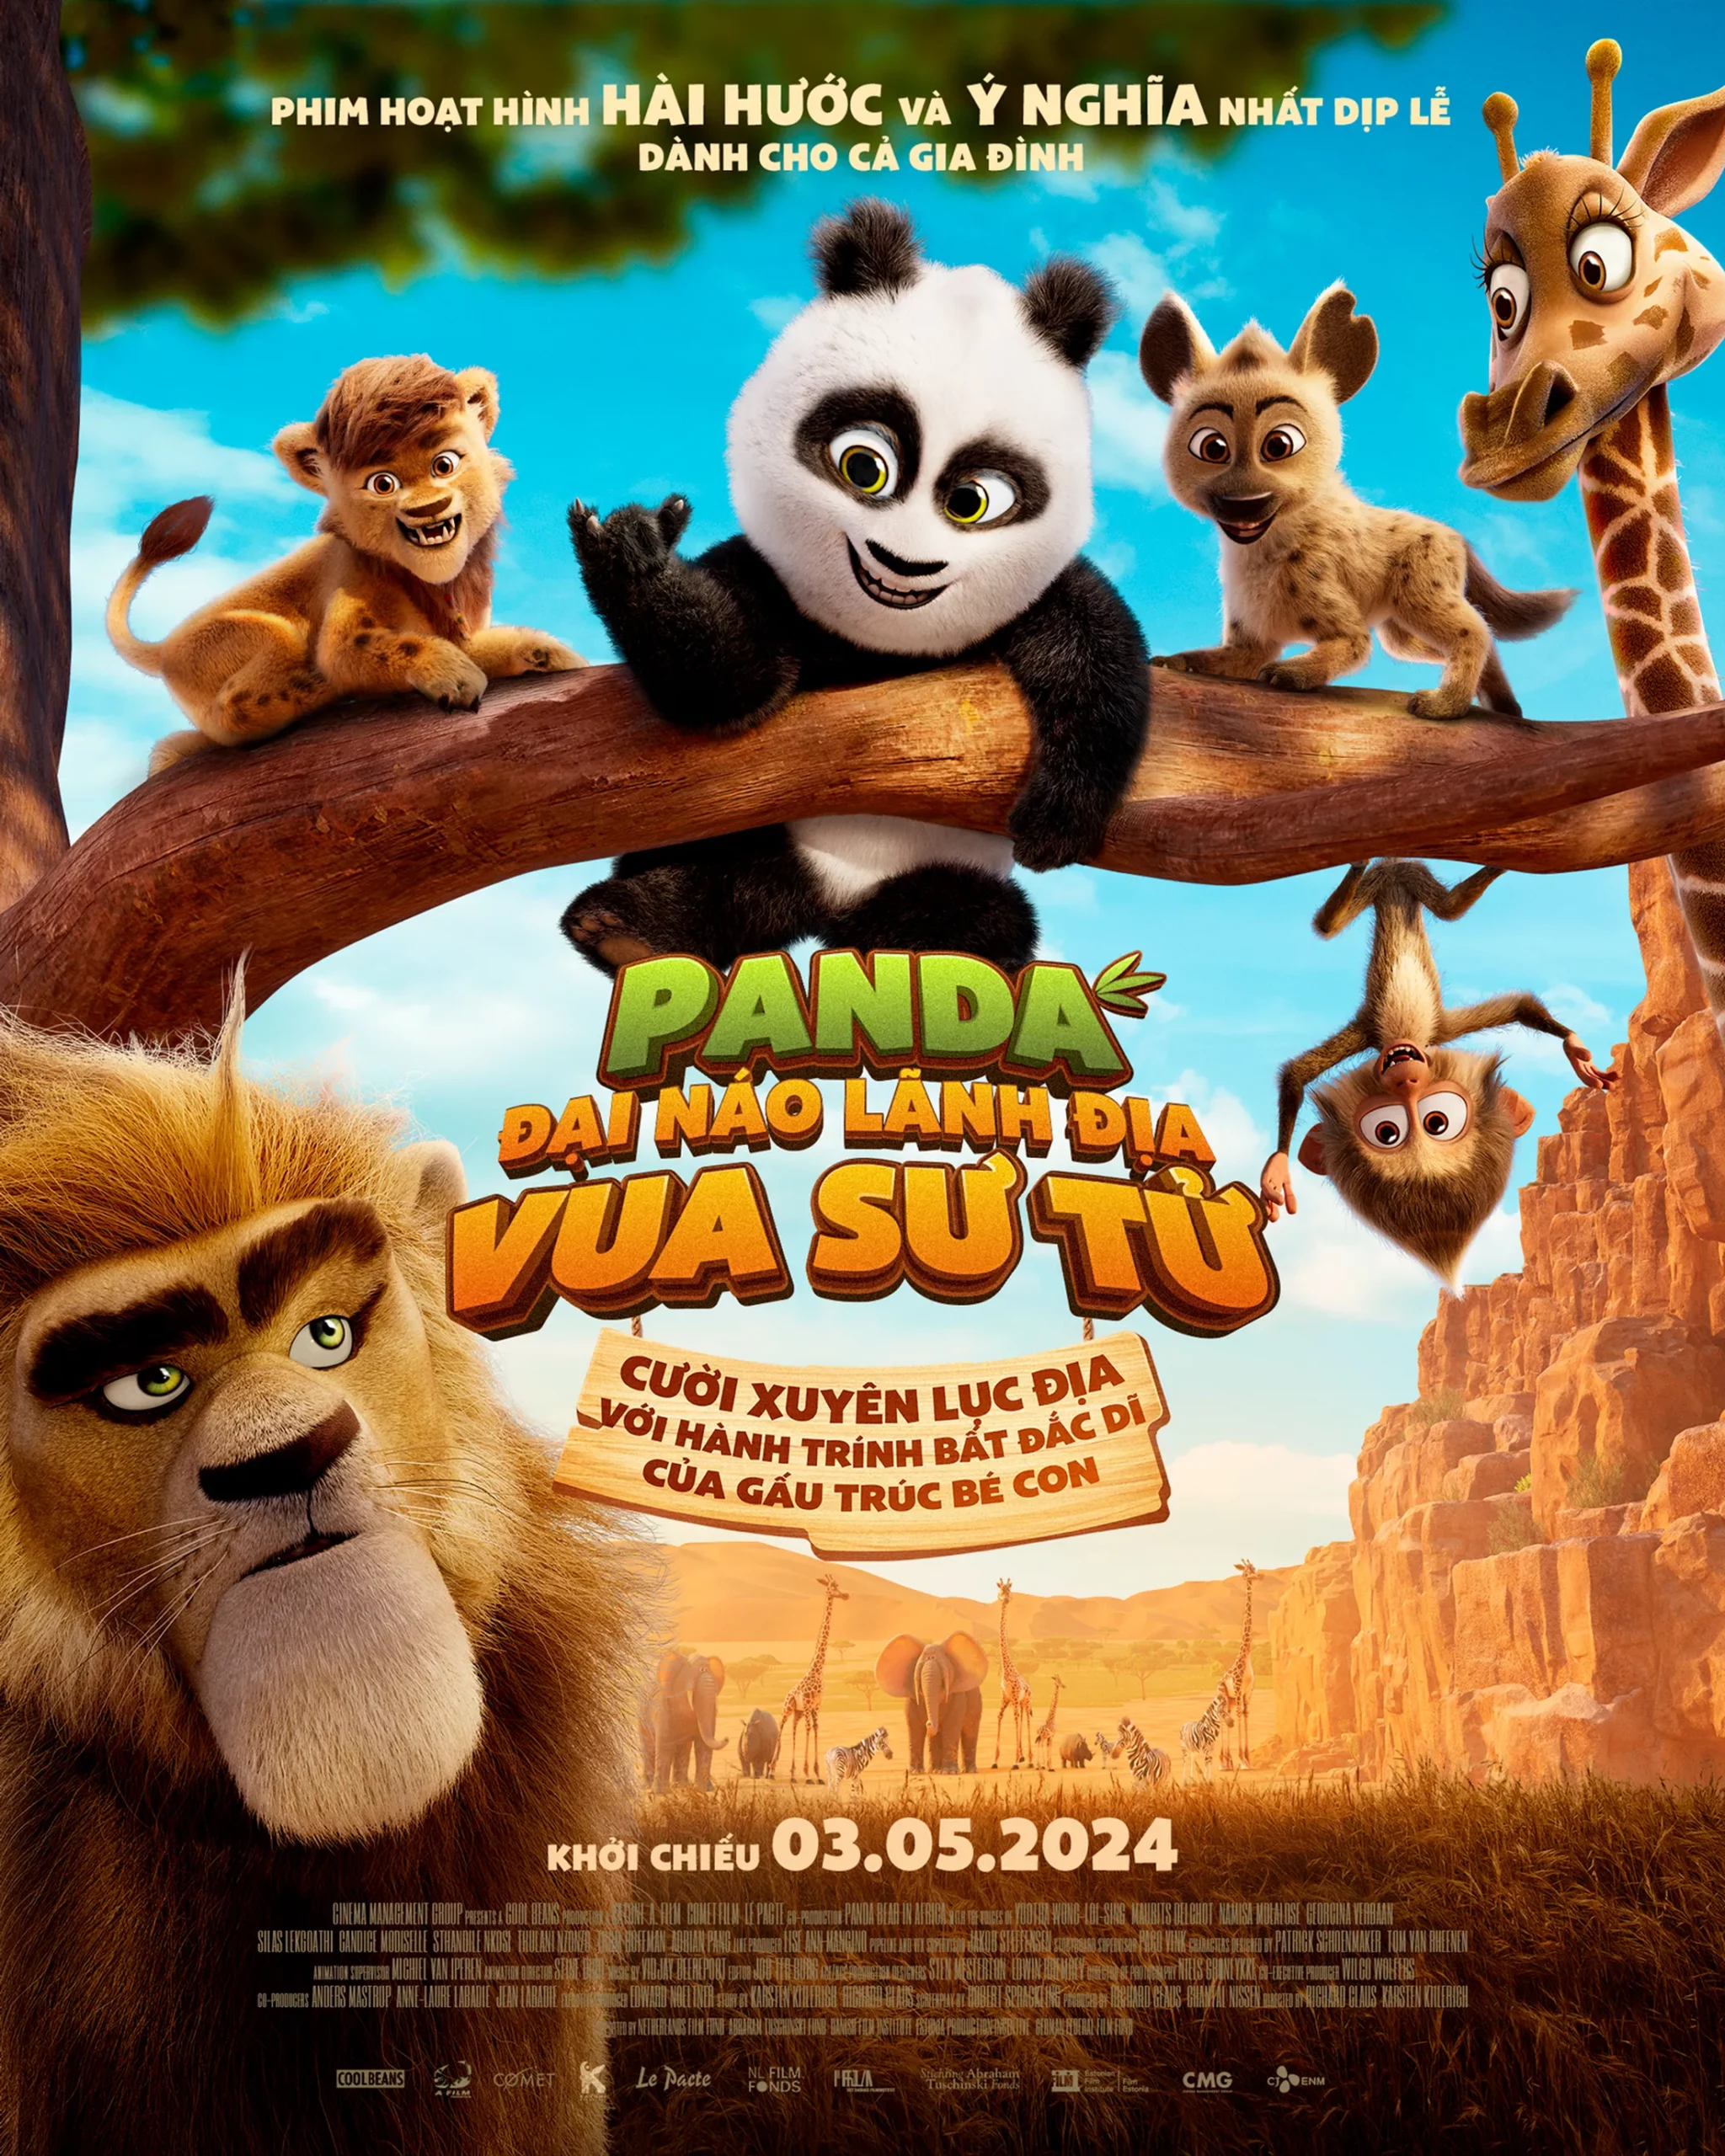 Poster phim Panda Bear In Africa (Panda Đại Náo Lãnh Địa Vua Sư Tử)